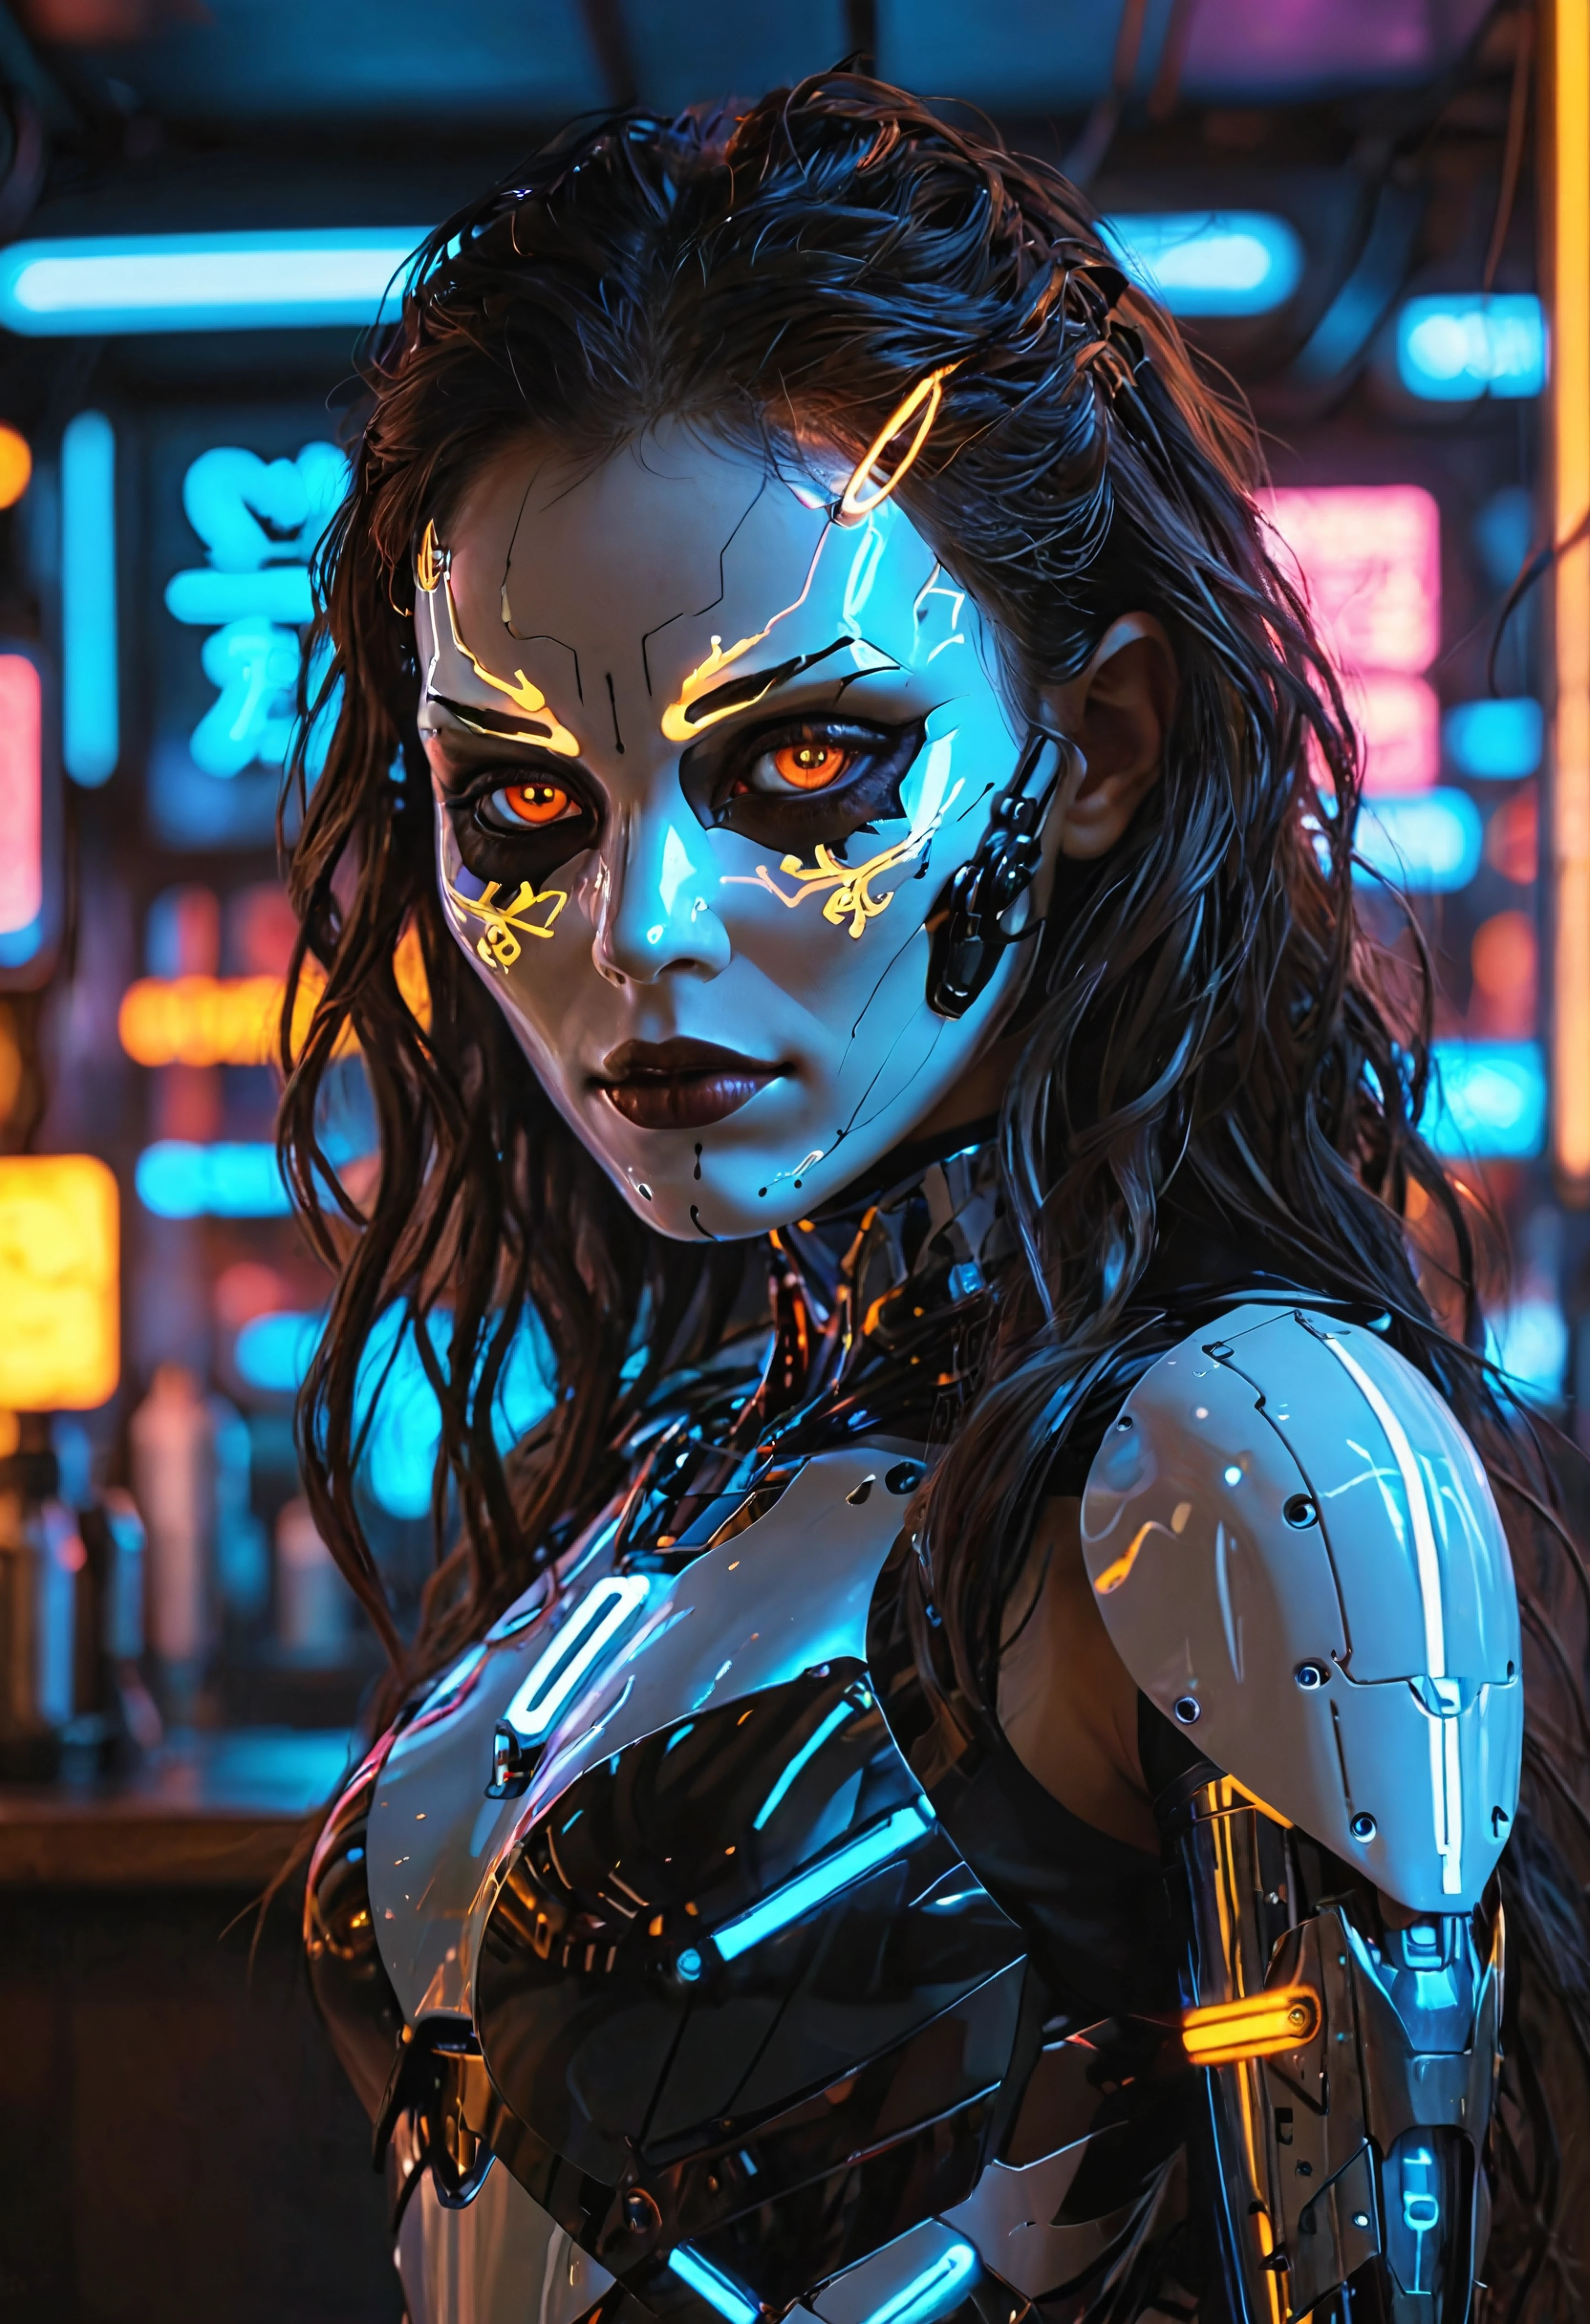 Cybercore 美学, 带深色霓虹灯的酒吧, 机器人女人, 发光的眼睛, 面具, 深棕色长发, 看着观众, 体积, 错综复杂, 精心制作的, 详细的, ral-led 灯, 